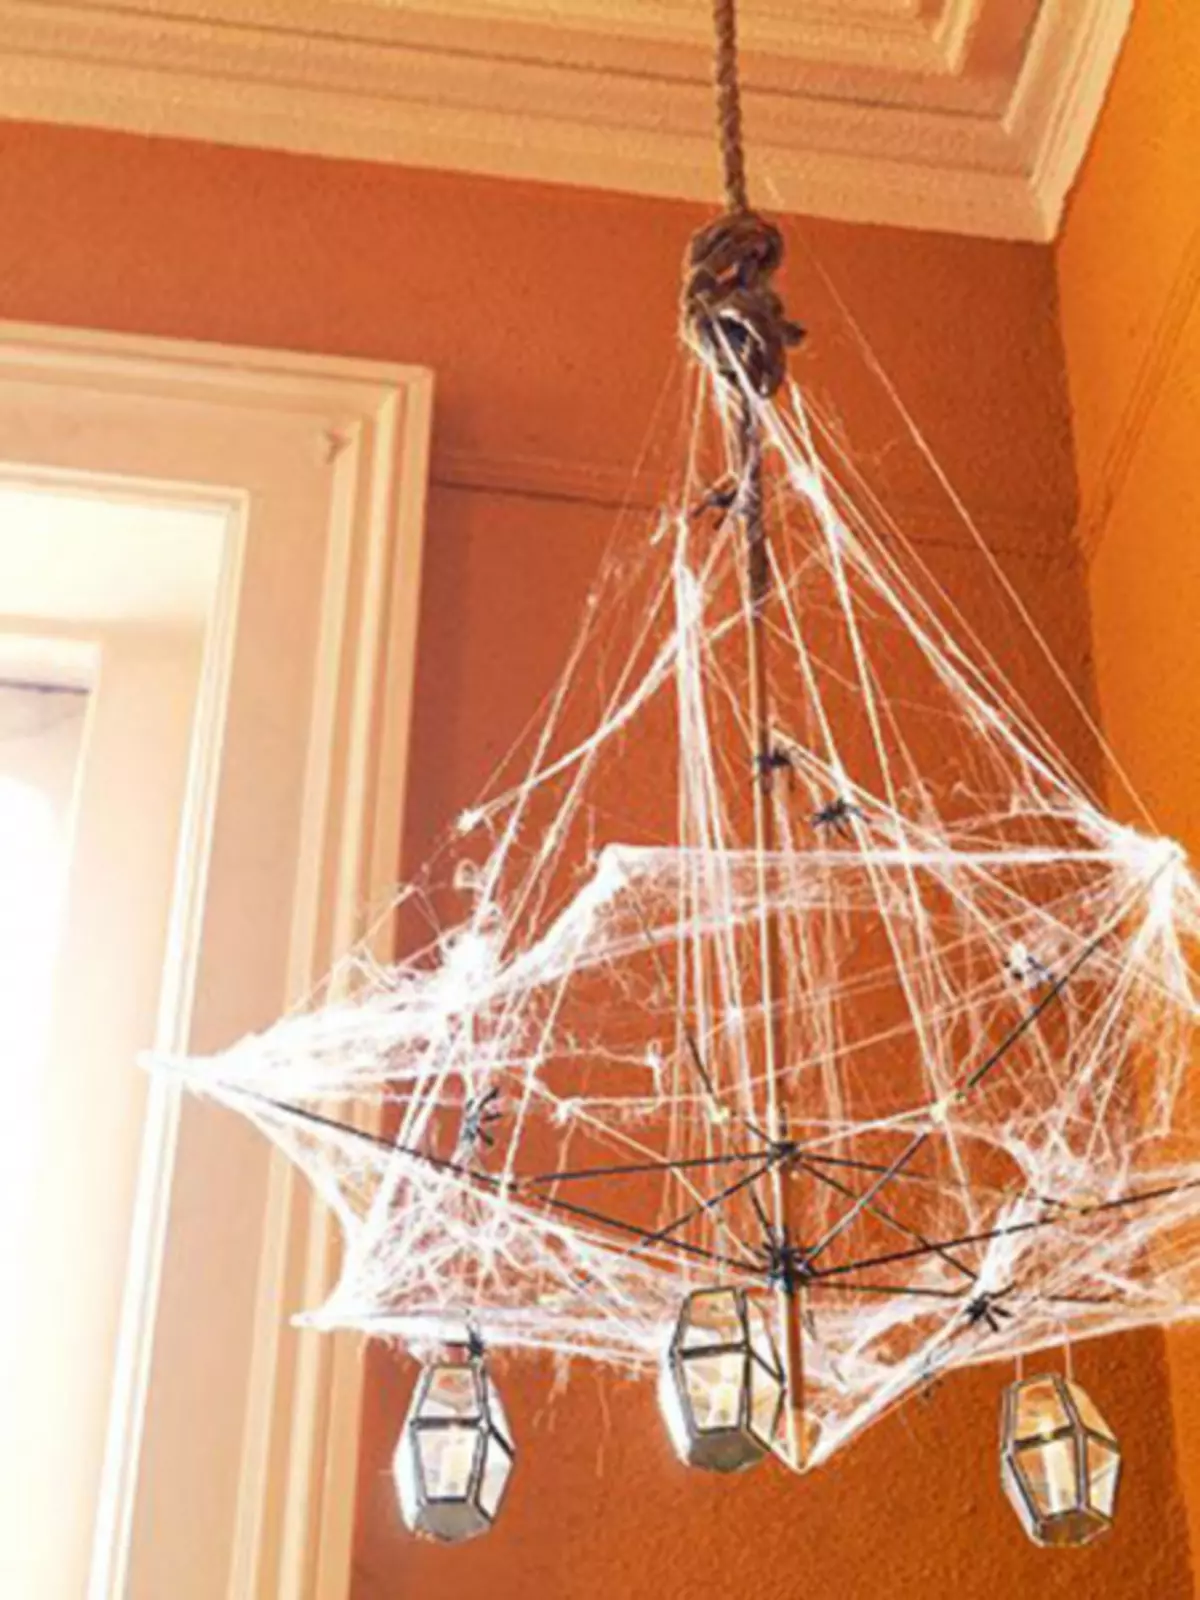 Web på Halloween gør det selv fra ledning og fra tråde